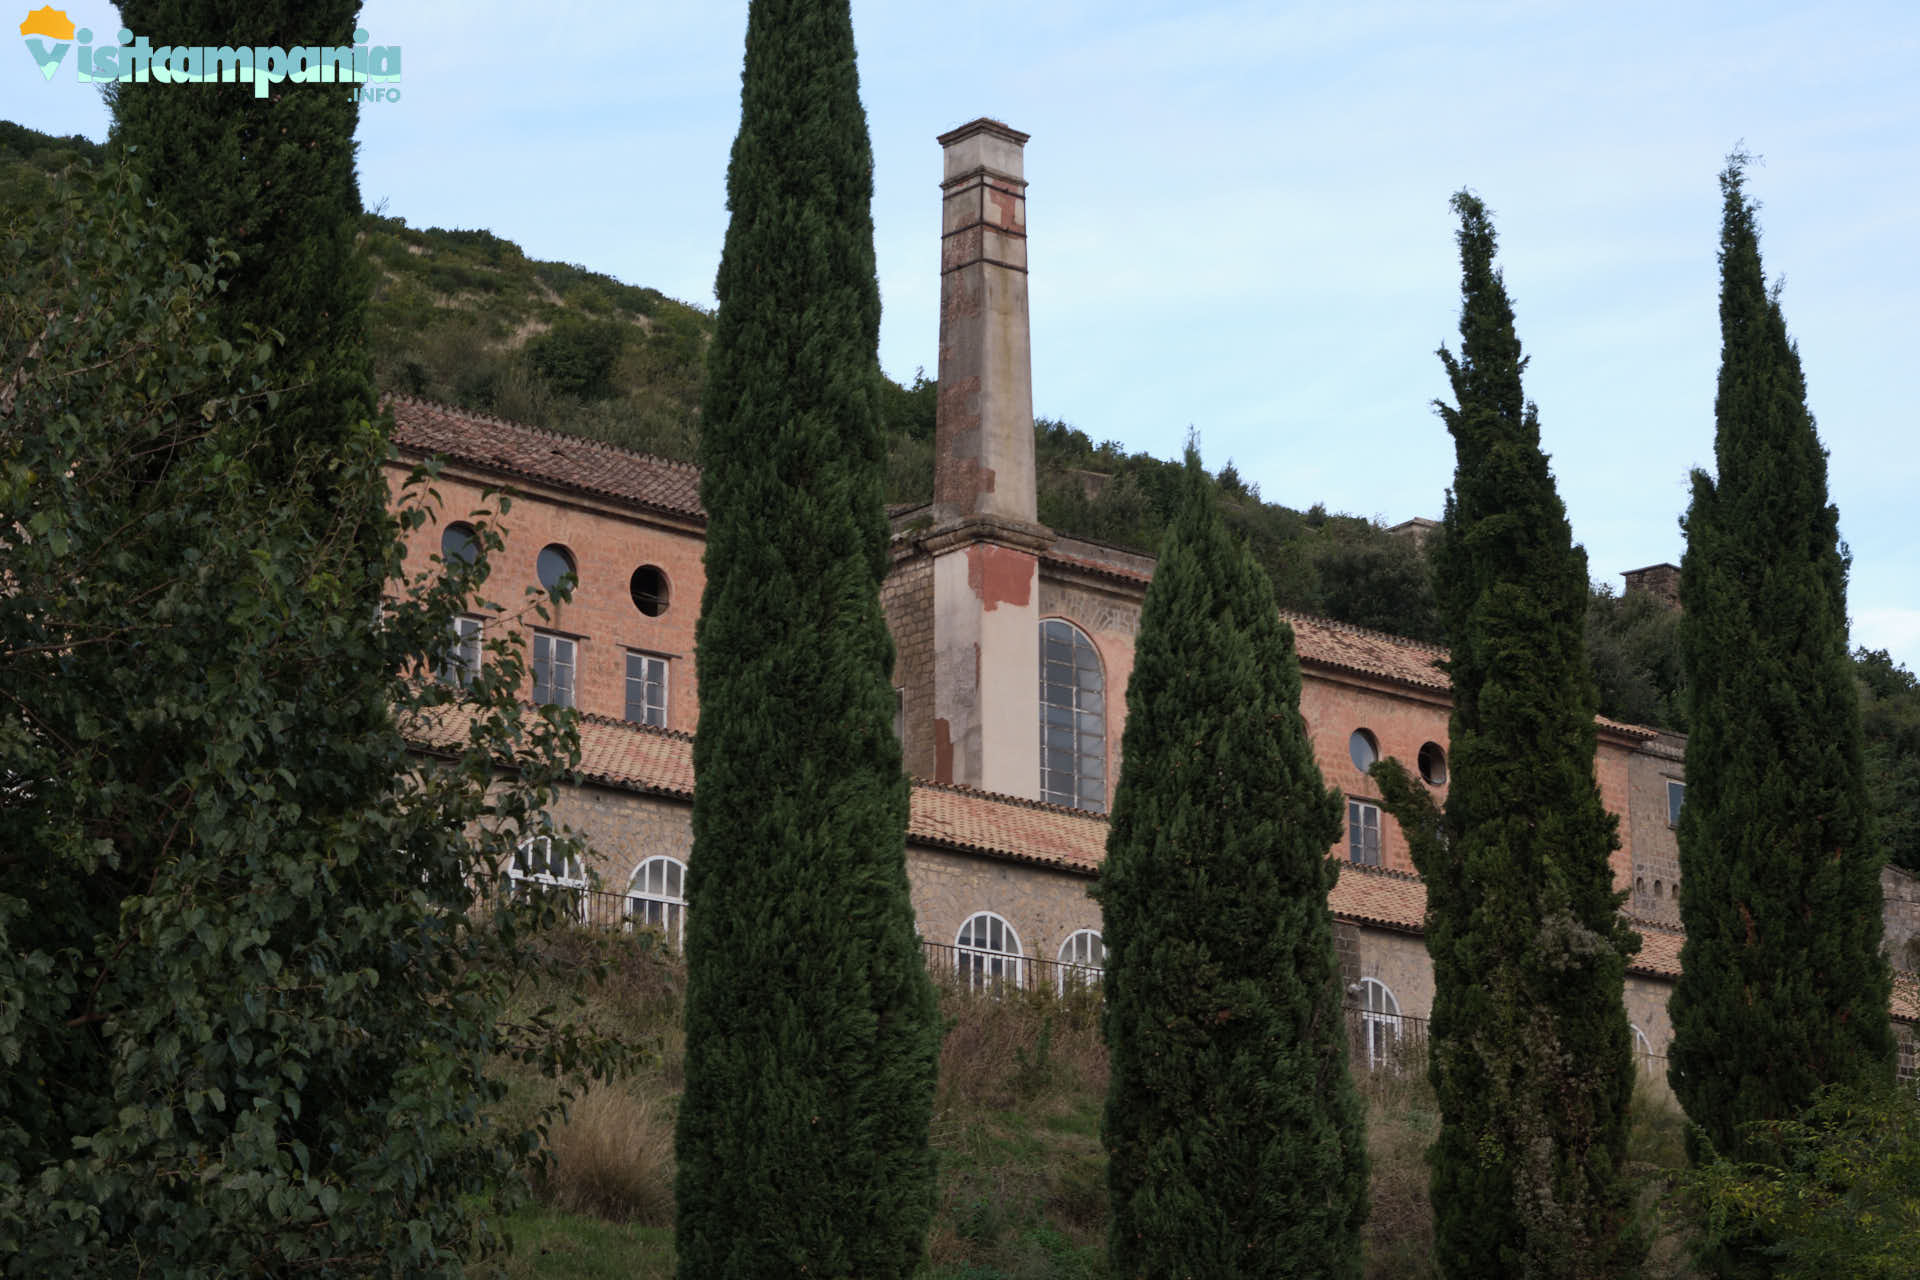 Real Belvedere di San Leucio, die Spinnerei und die Coculliera